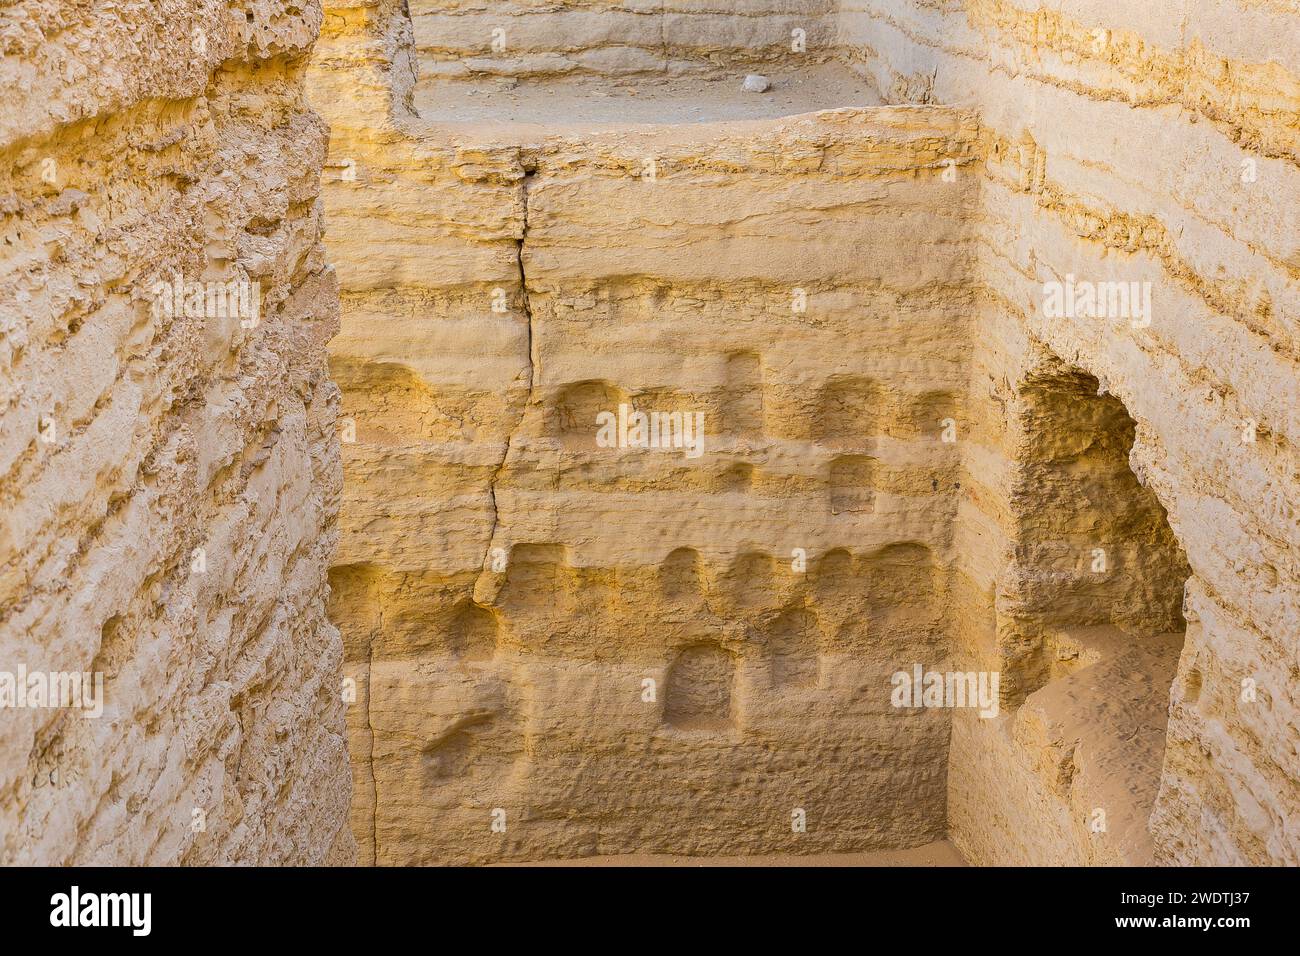 Egitto, Saqqara, ingresso della necropoli di Serapeum: Nicchie per le stele. Foto Stock